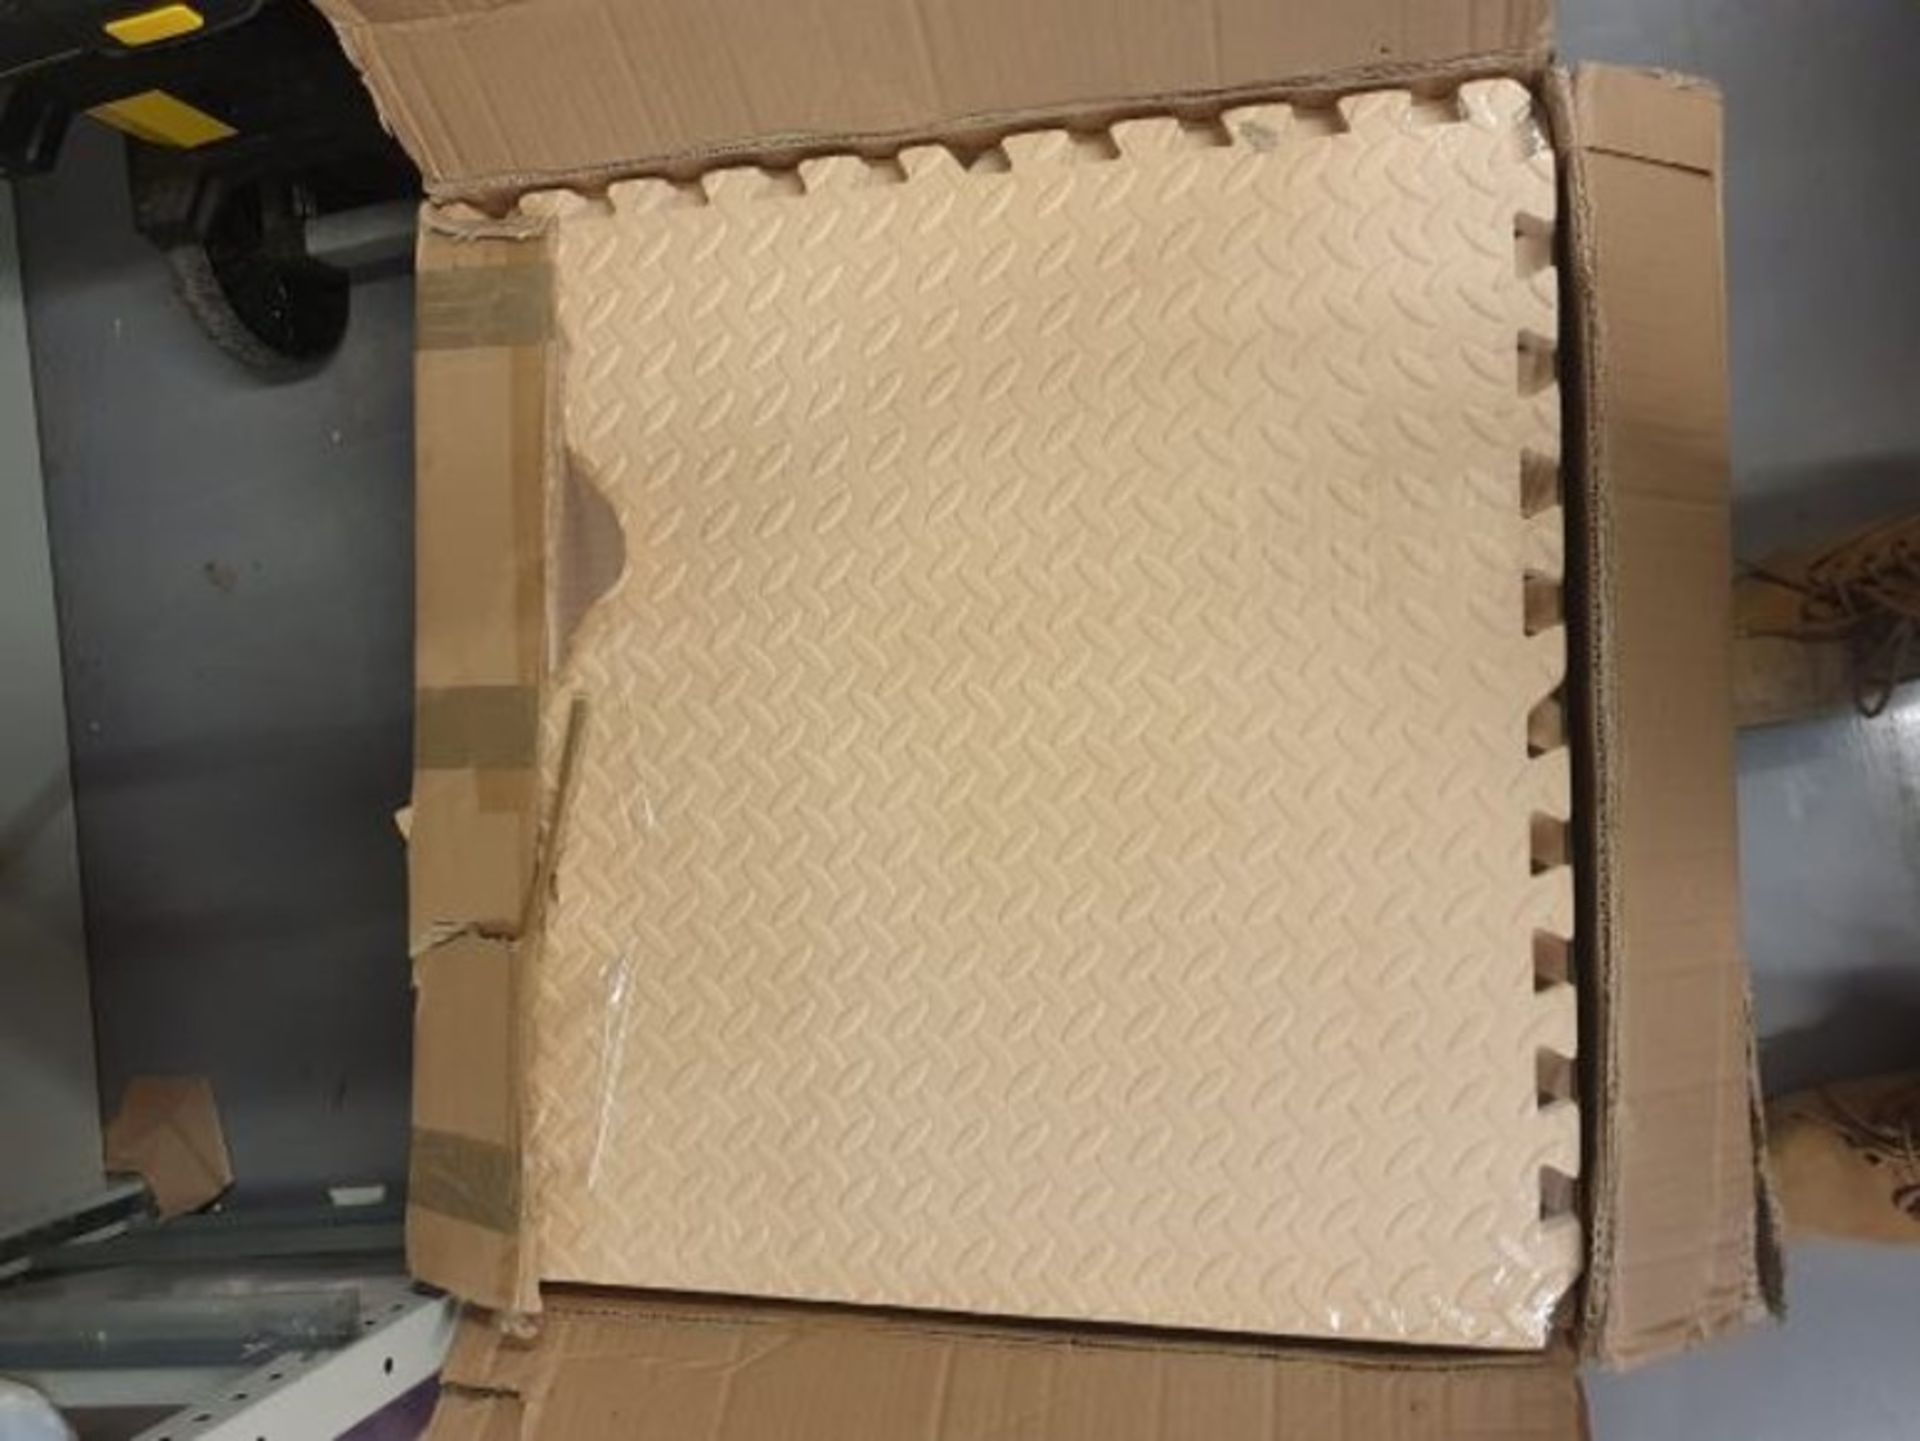 Foam floor mats in box x 26